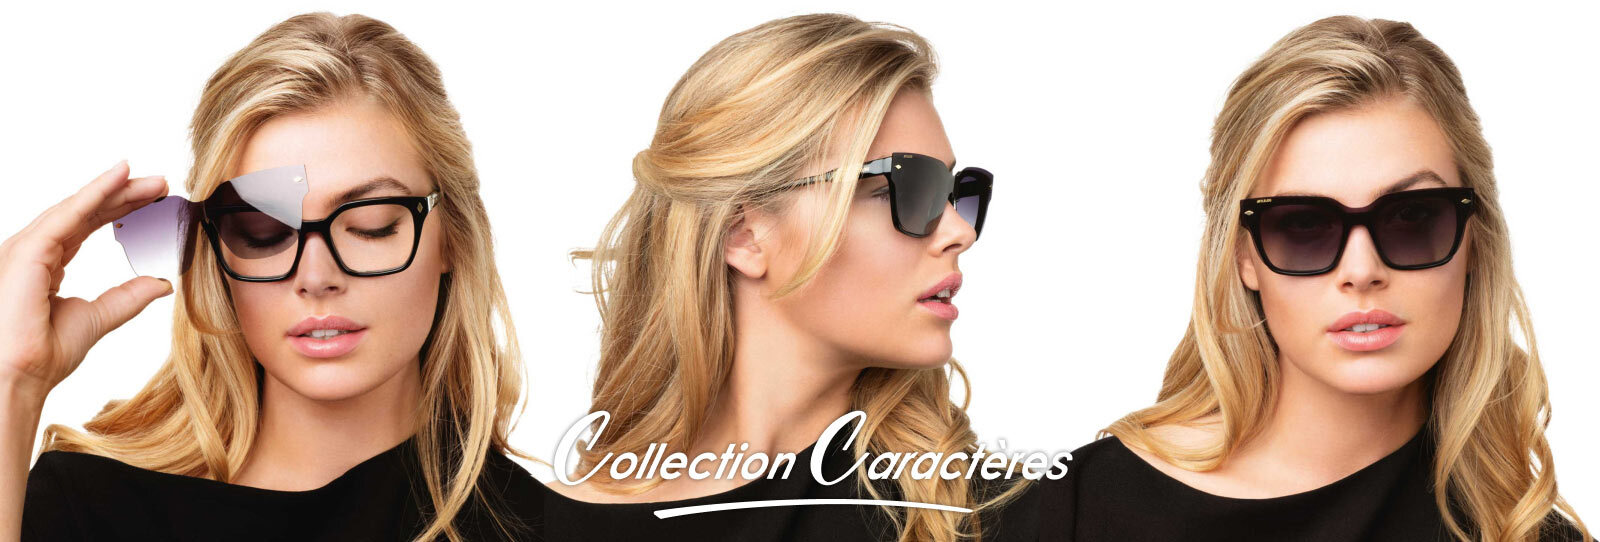 Femme portant un modèle de lunettes de la collection Magic Caractères dans 3 poses différentes